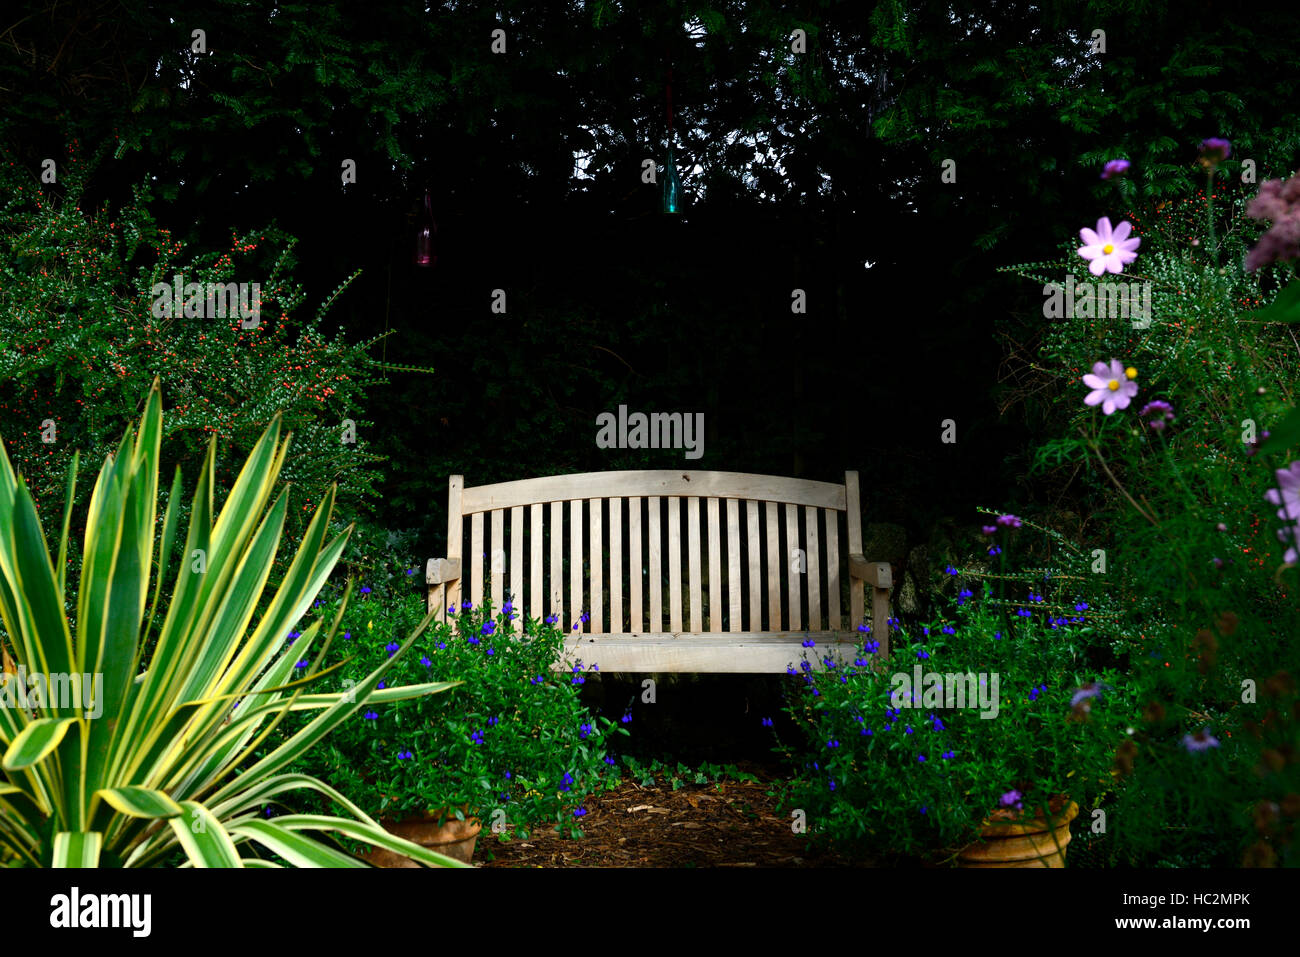 Legno giardino in legno sedile unico ombra ombreggiata area ombreggiata vista viewpoint giardinaggio design floreale RM Foto Stock